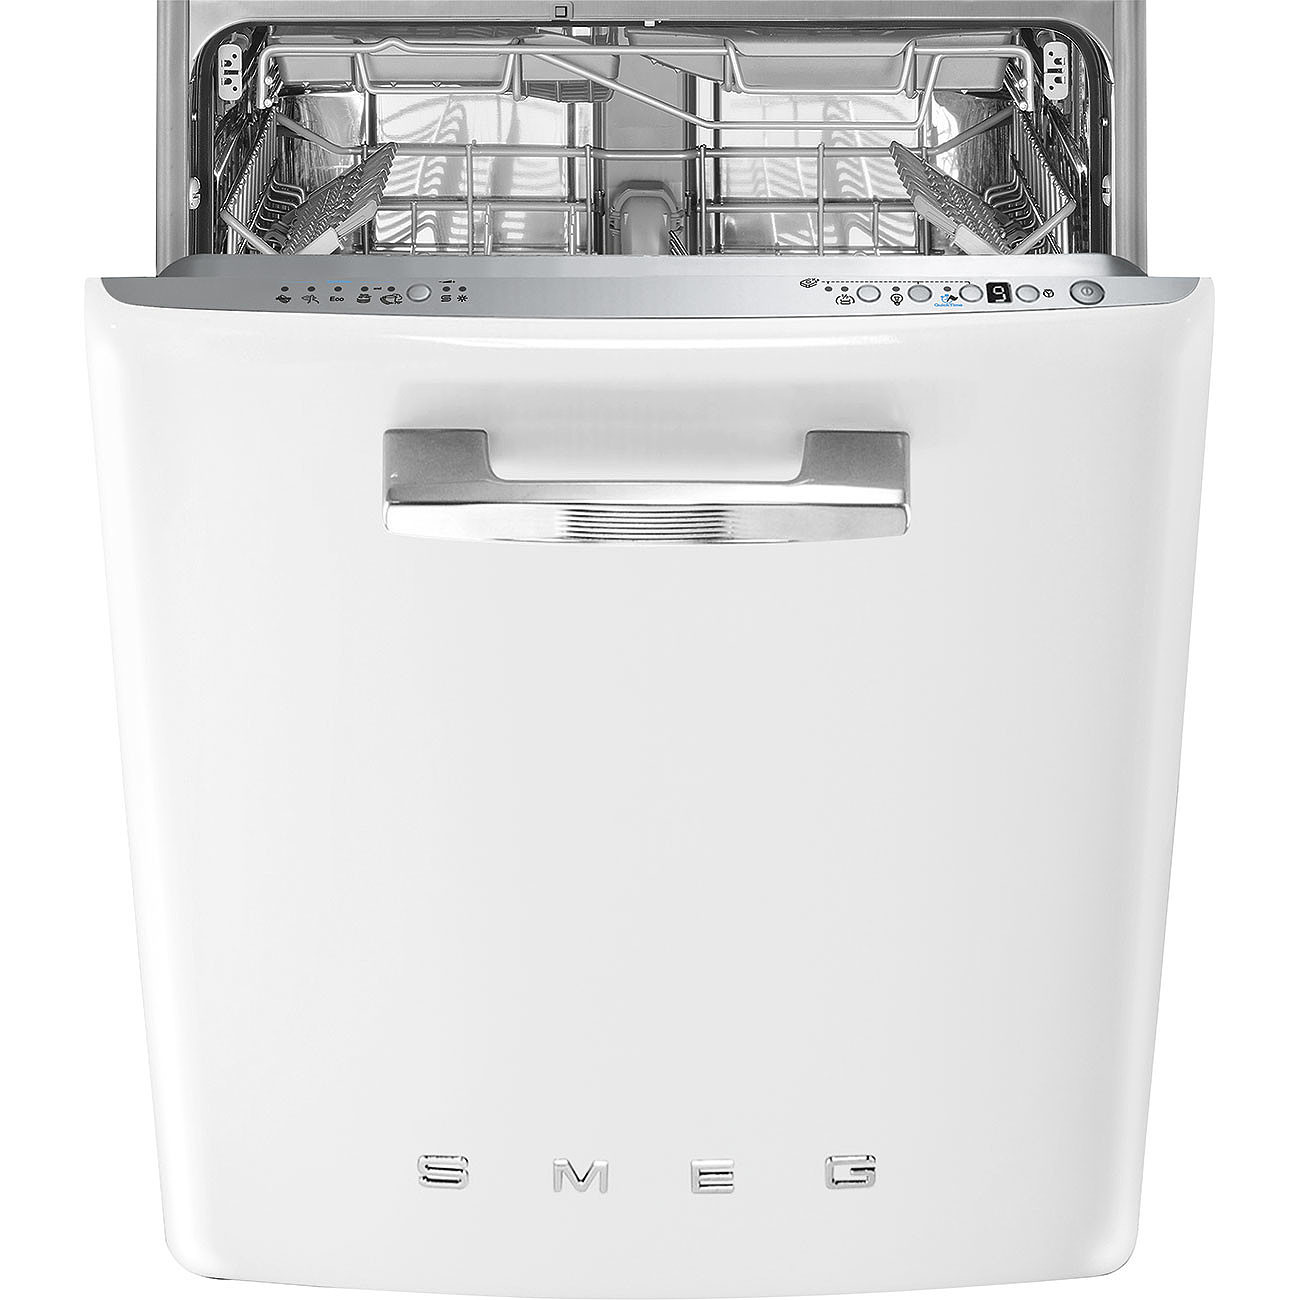 Рбт посудомоечная машина. Посудомоечная машина Smeg st2fabwh. Посудомоечная машина Smeg stfabcr3. Посудомоечная машина Смег 60 см встраиваемая. Посудомоечная машина Smeg st331l.